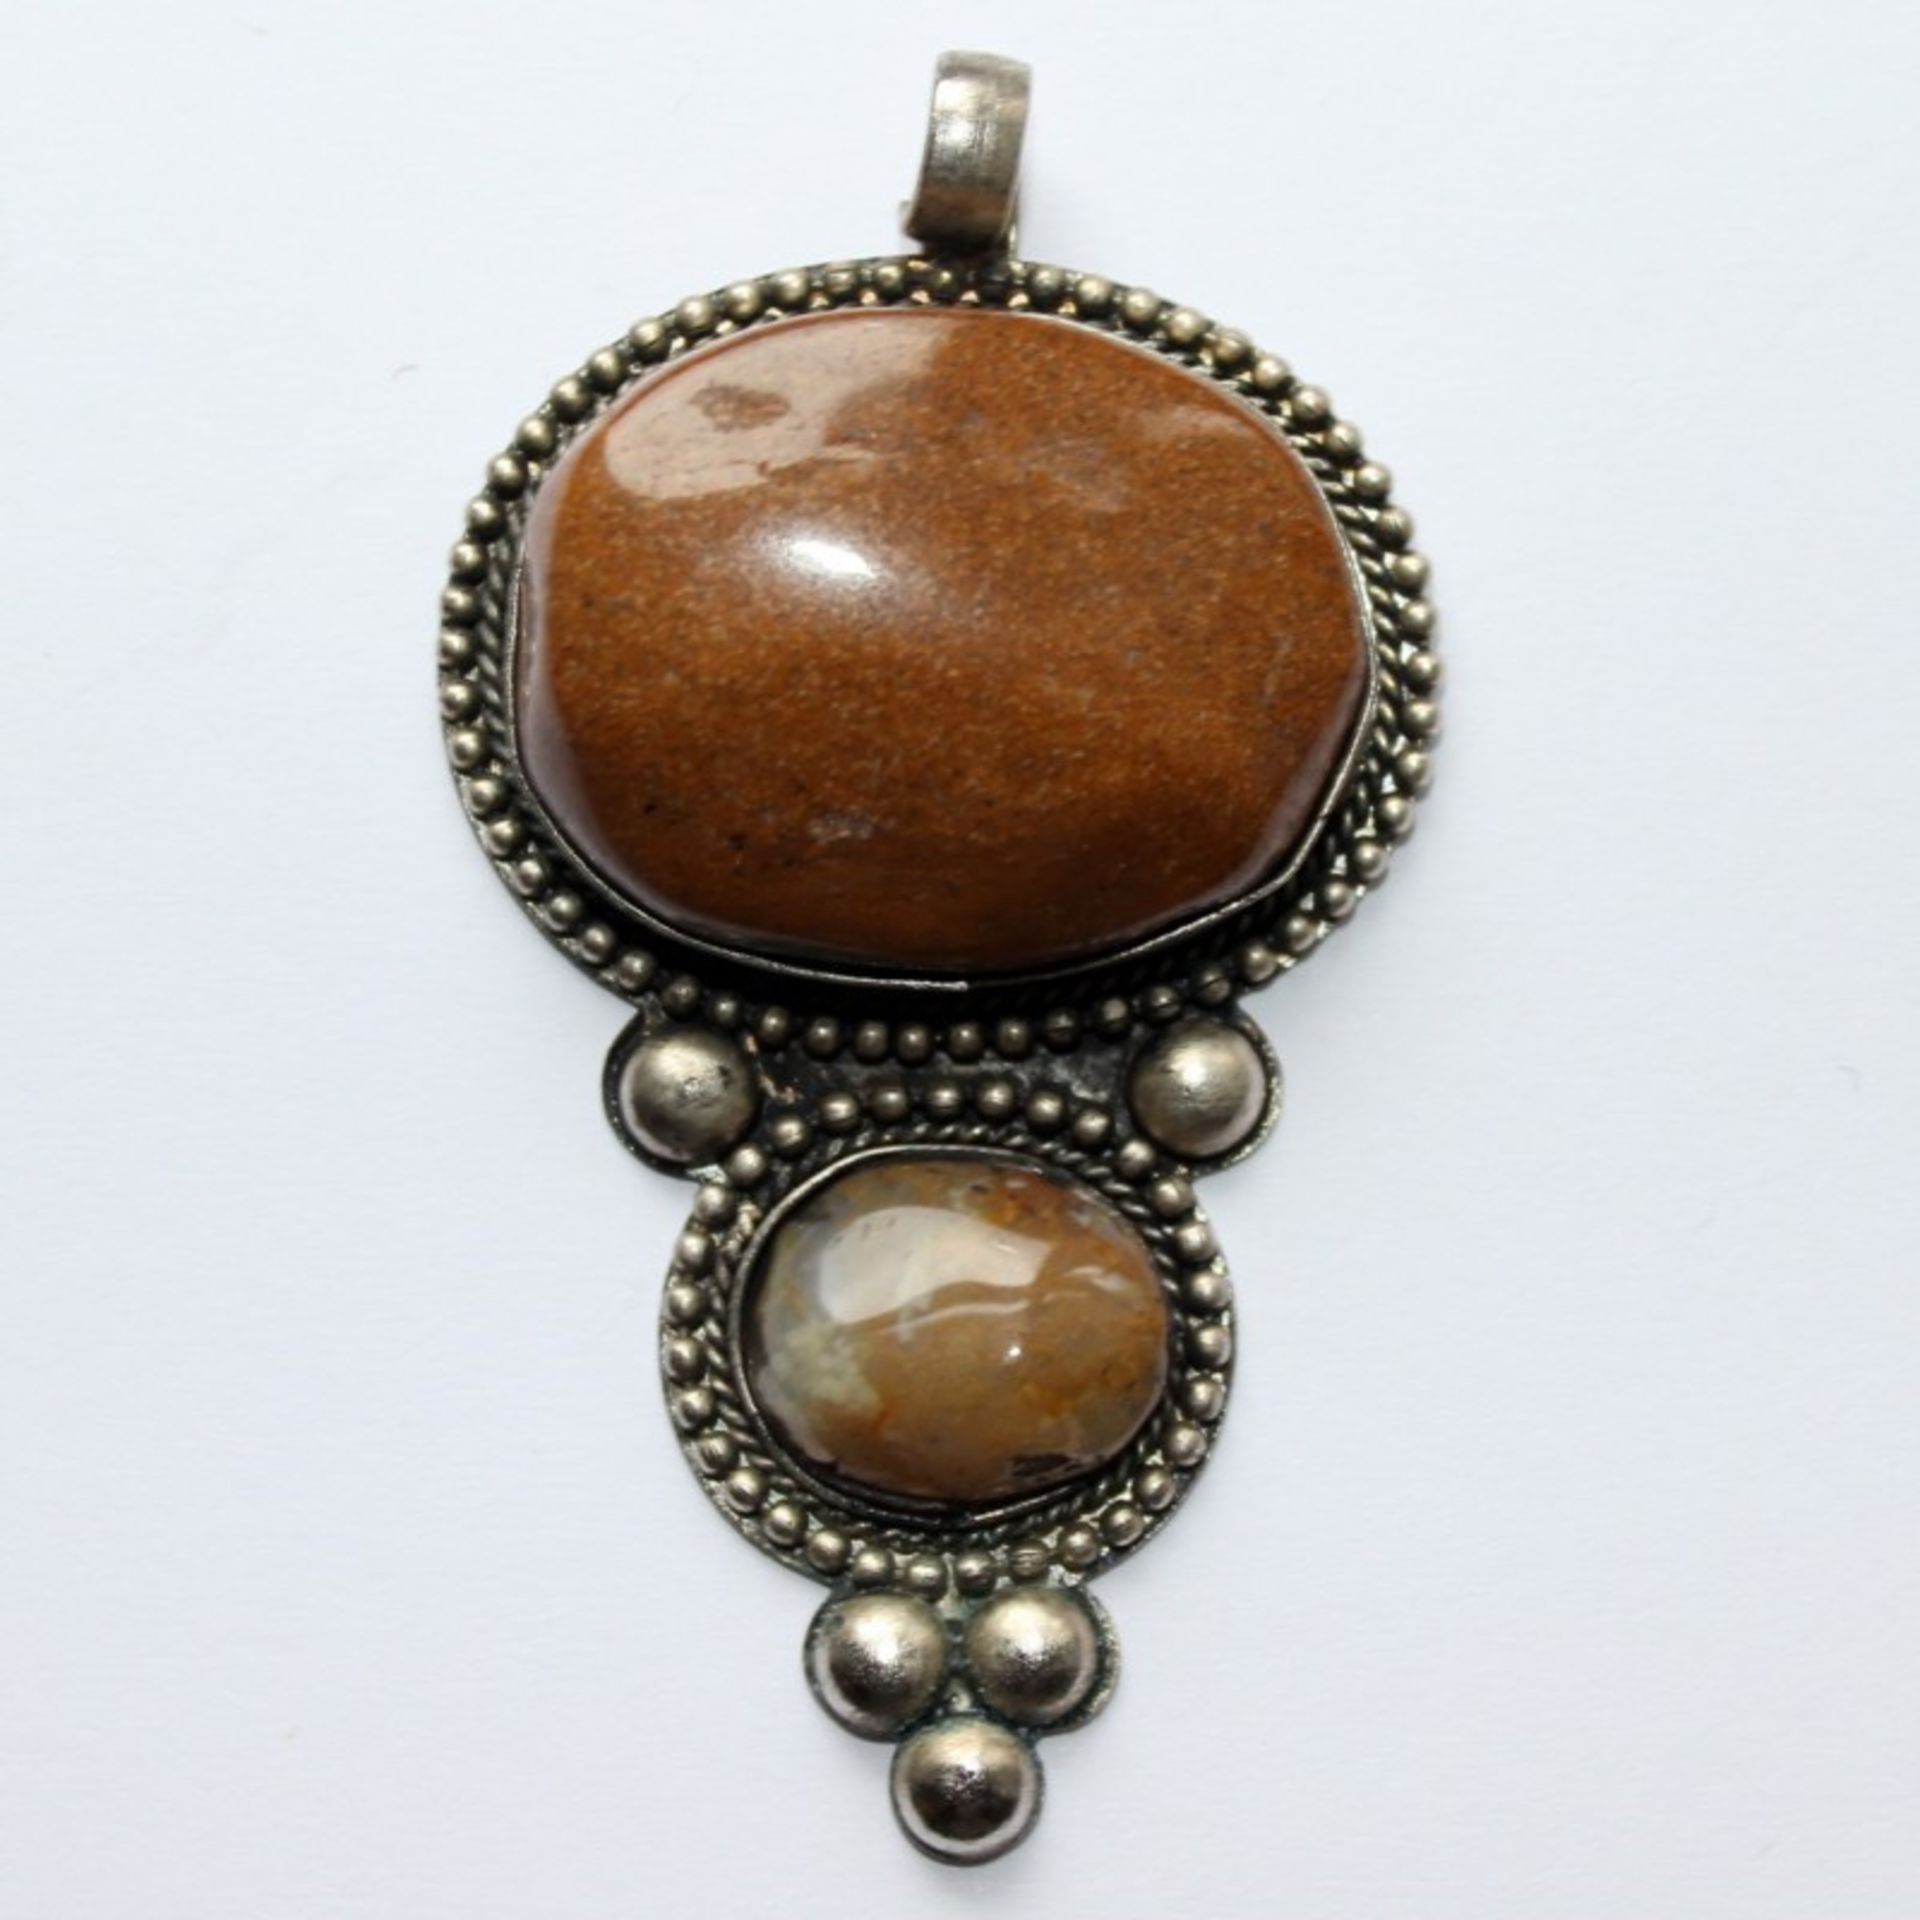 Anhängertropfenförmig, besetzt mit 2 ovalen, honigfarbenen glatt polierten Steinen in Kugelketten-